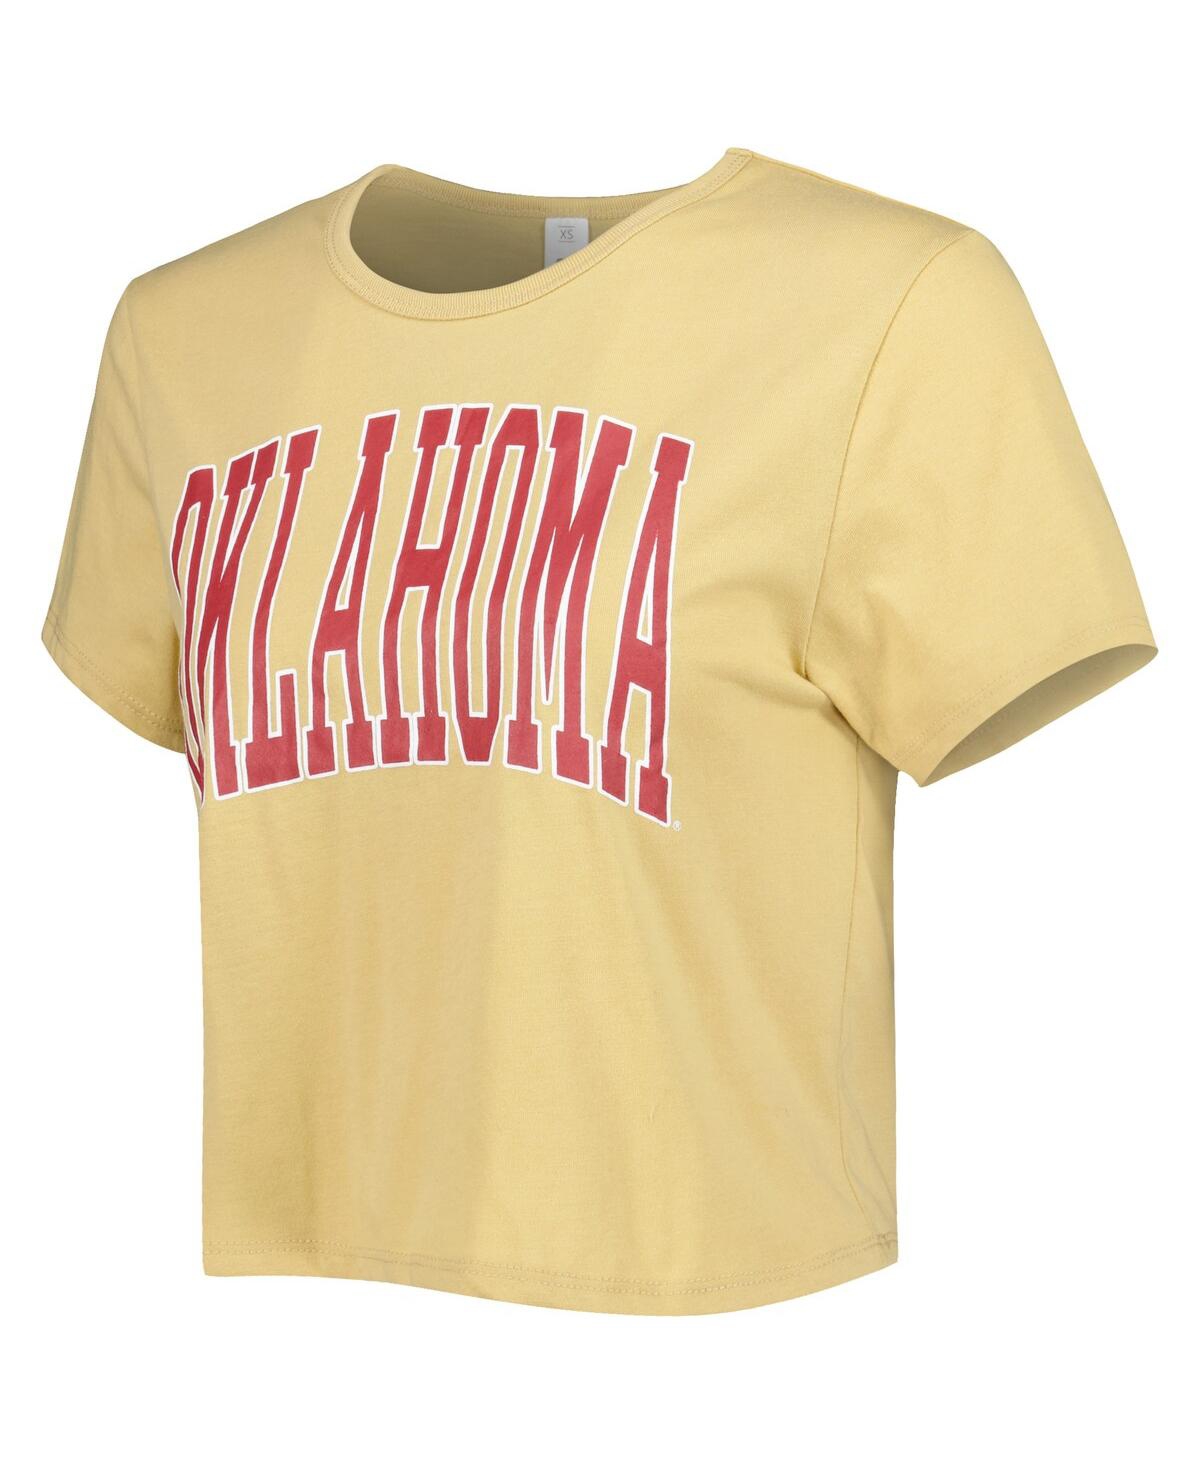 Shop Zoozatz Women's  Yellow Oklahoma Sooners Core Fashion Cropped T-shirt